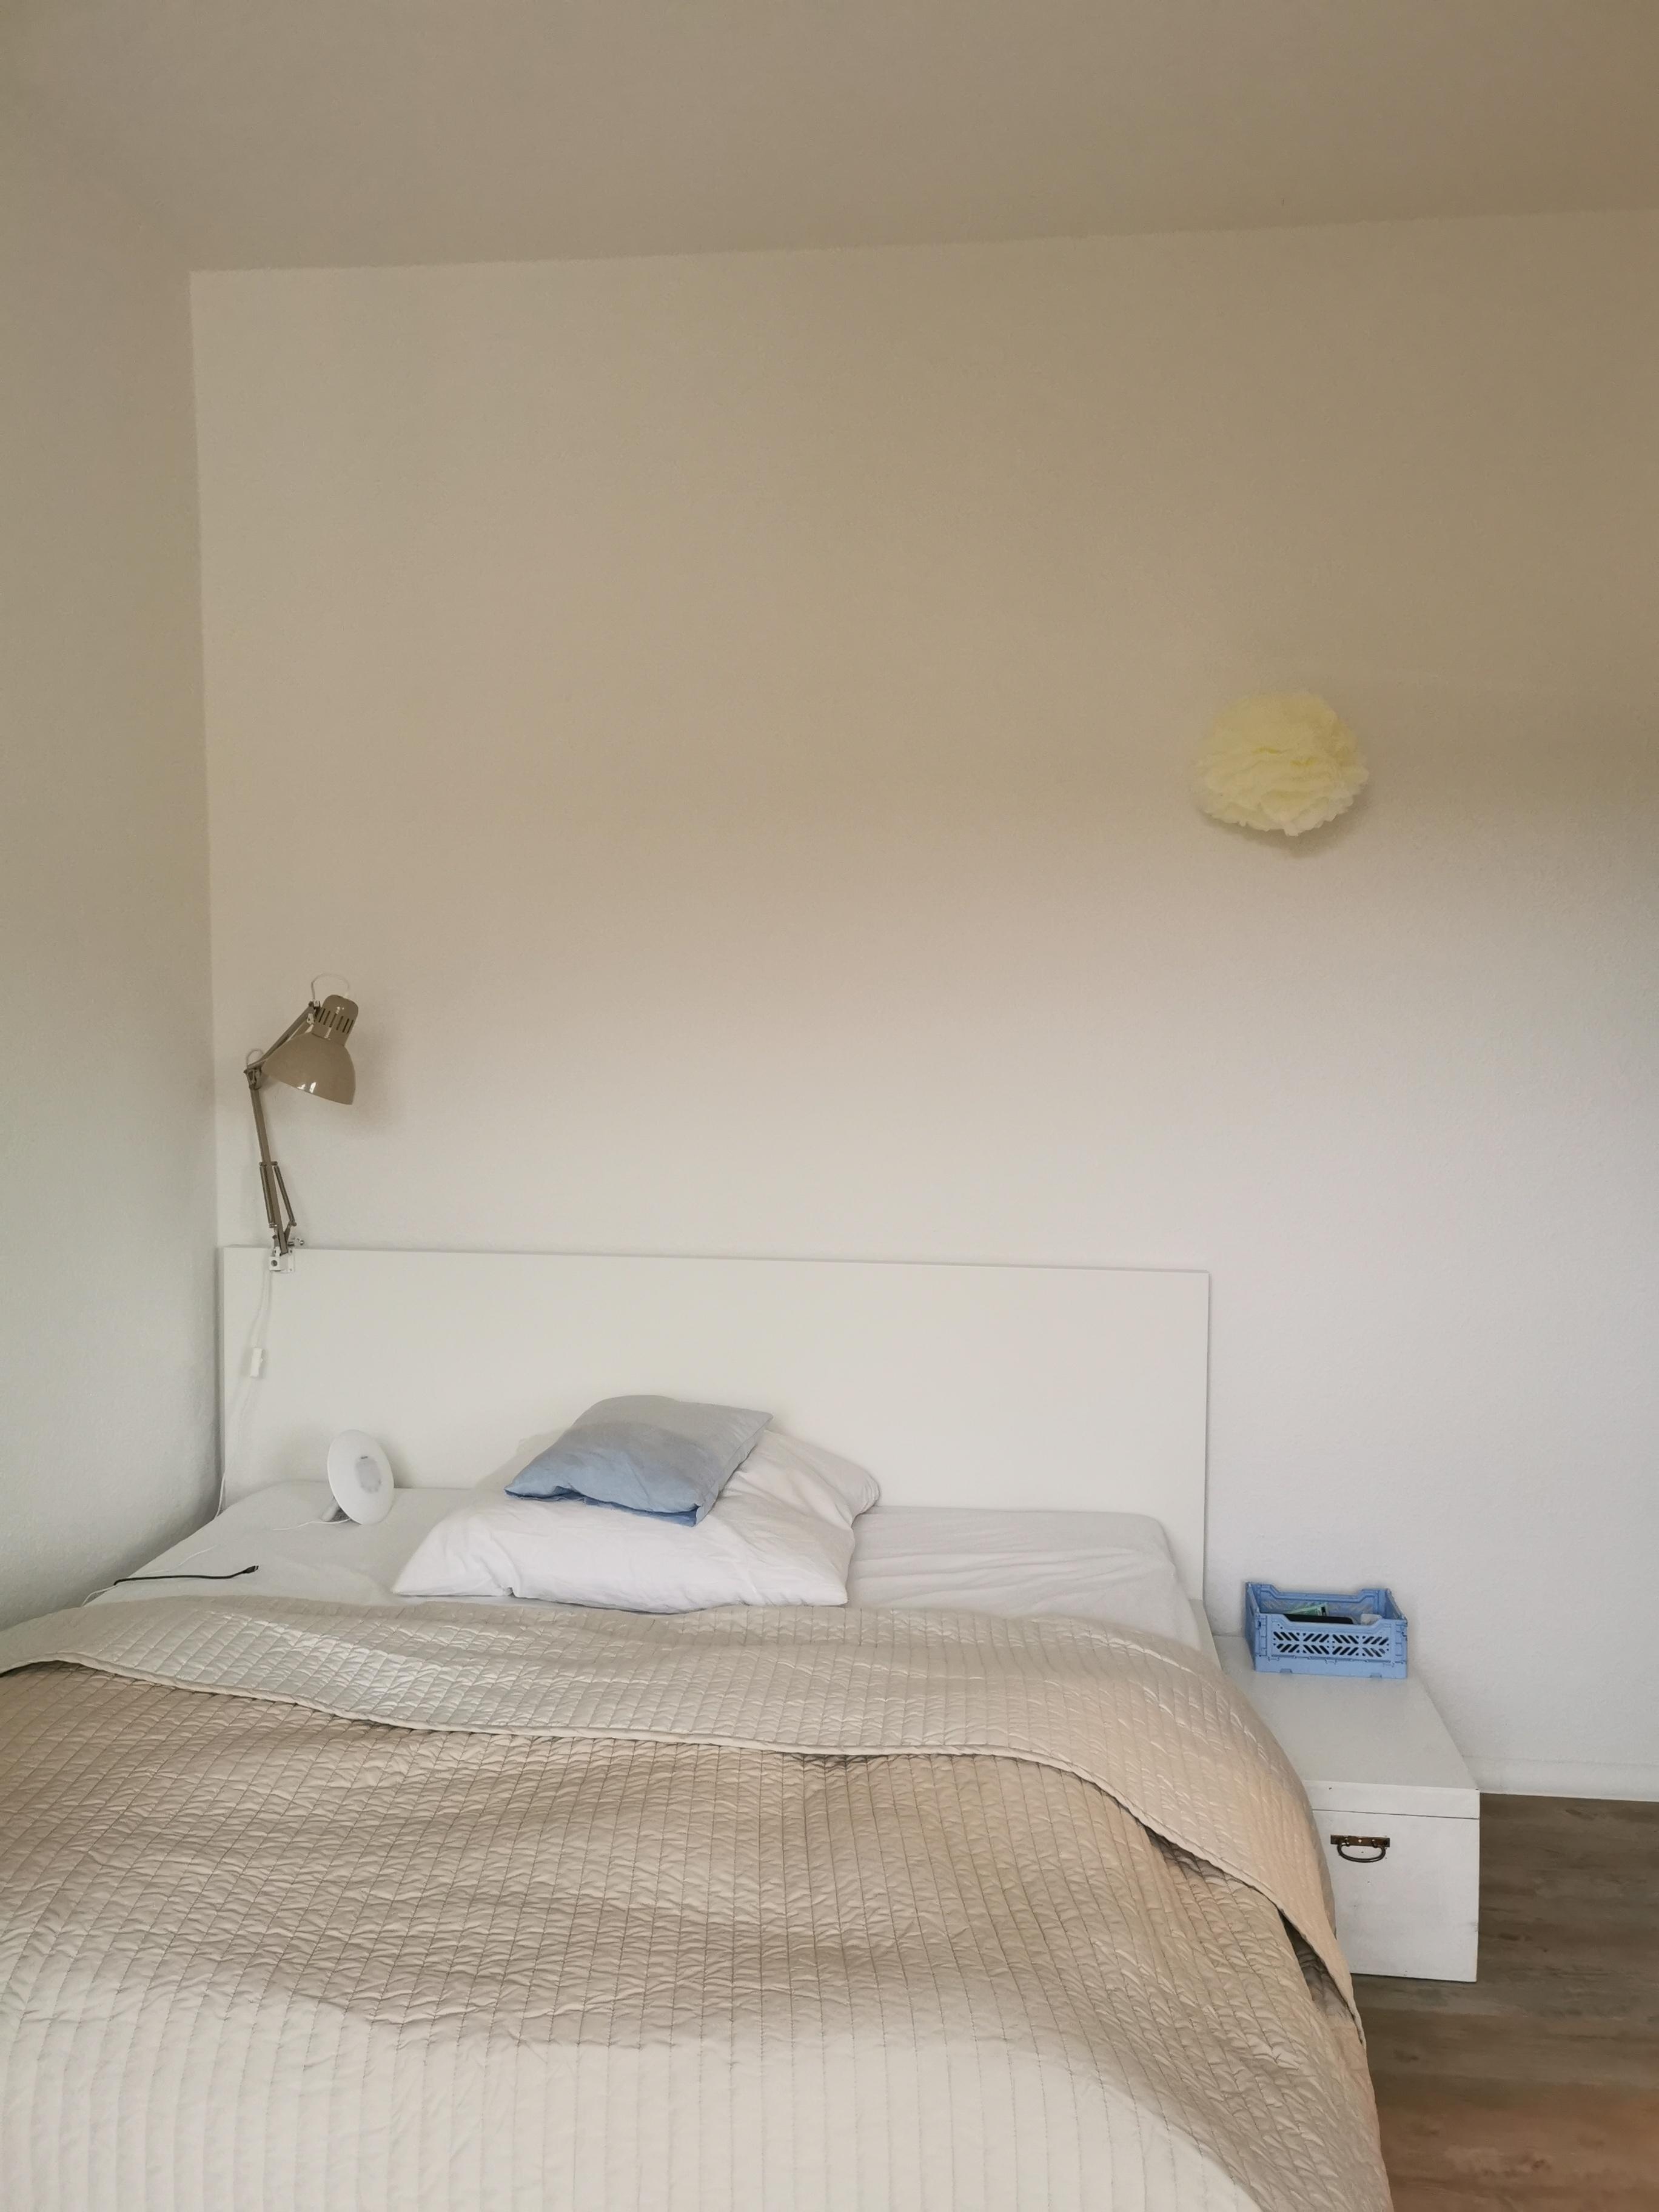 Weniger ist mehr. #minimalismus im #schlafzimmer #ikea #malm #tagesdecke